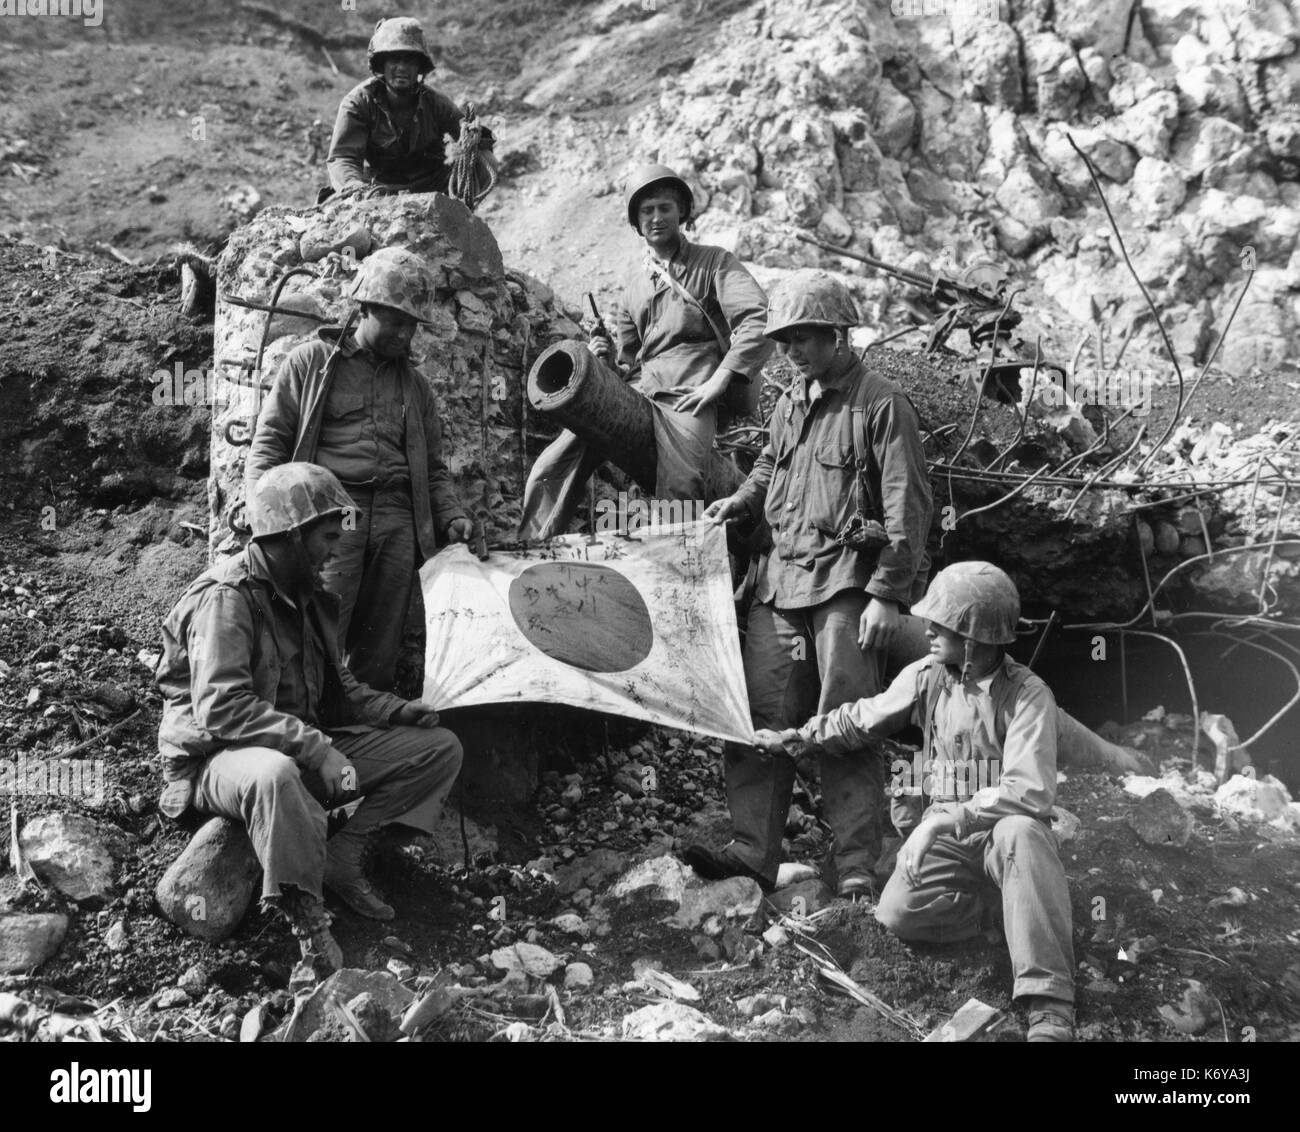 Marines pose with a captured Japanese Flag. Iwo Jima, February 23, 1945. Stock Photo